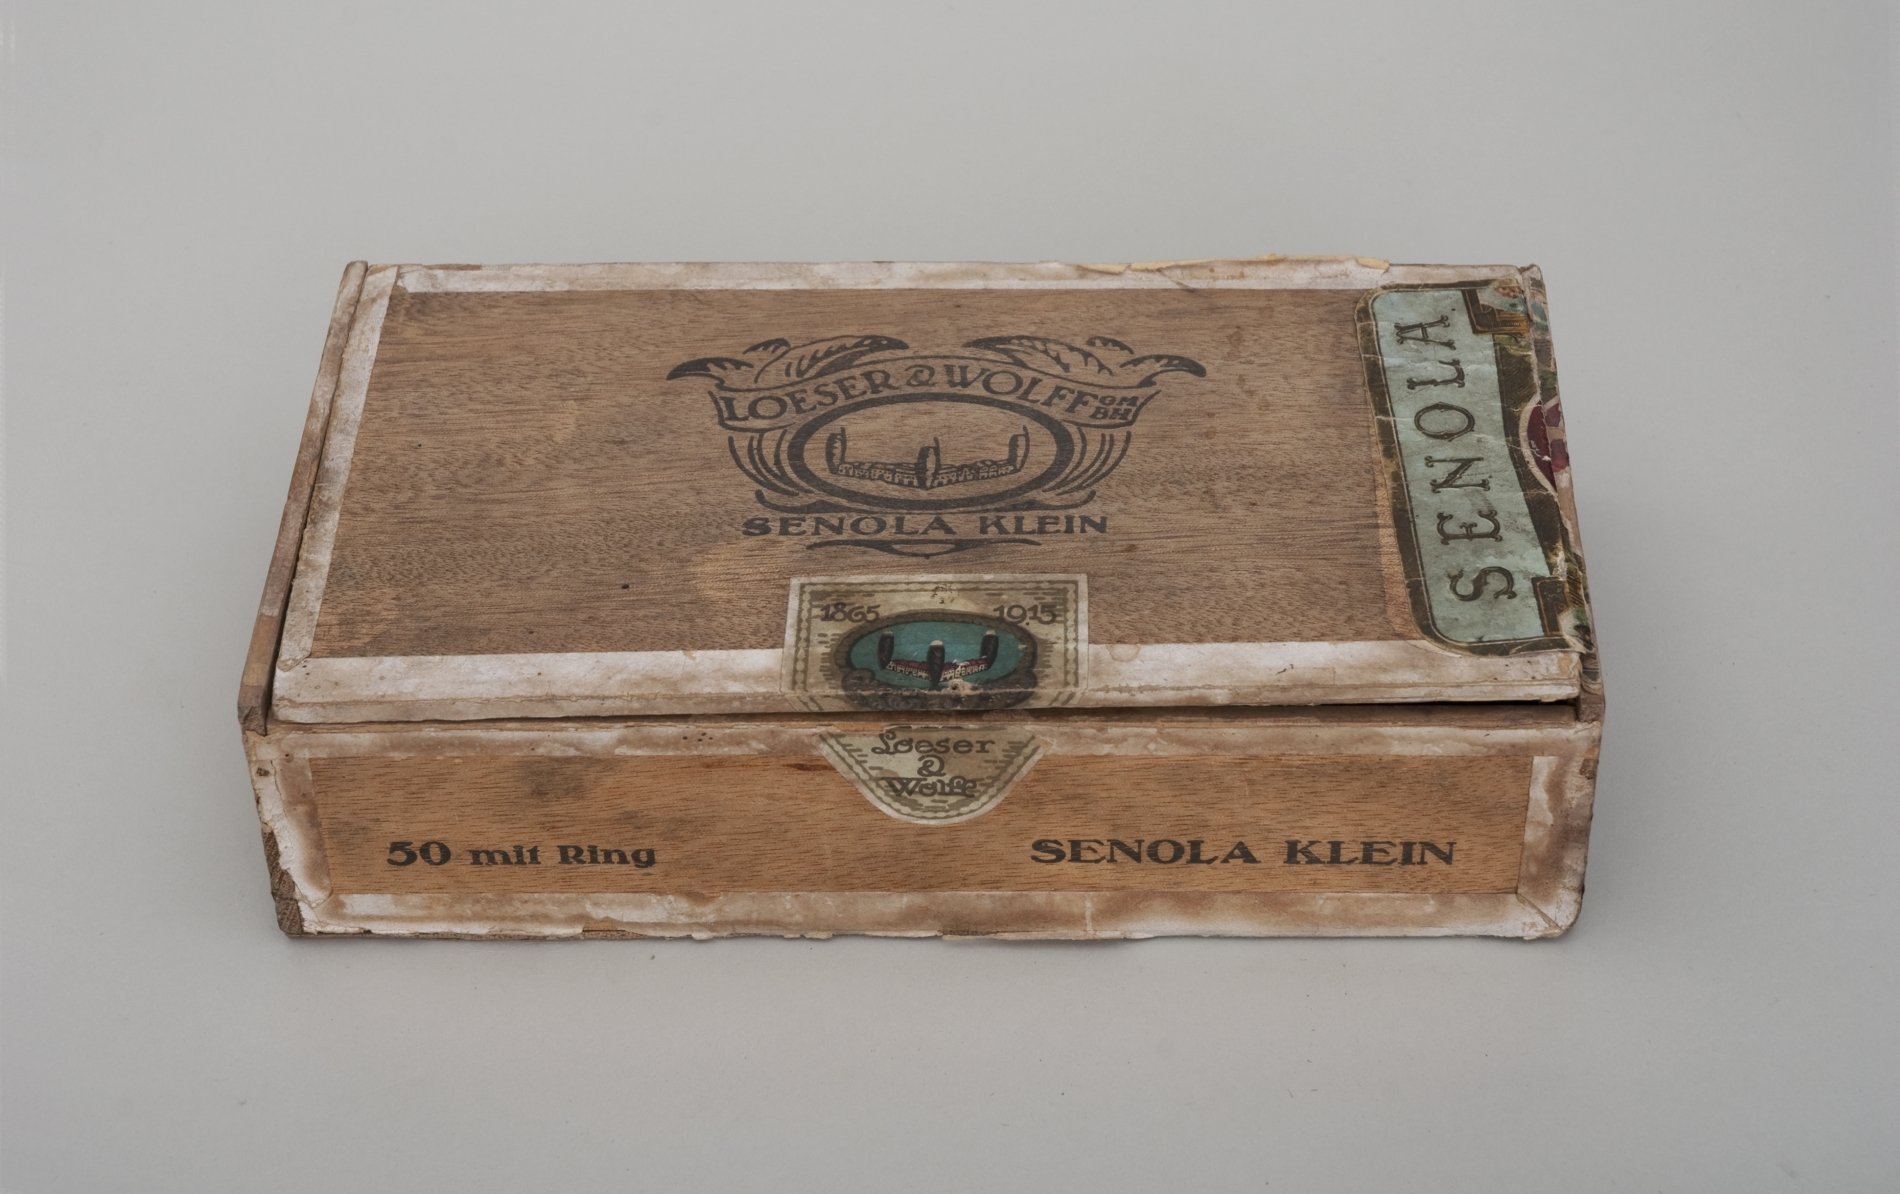 Zigarren-Kiste "Senola Klein" (Stiftung Domäne Dahlem - Landgut und Museum, Weiternutzung nur mit Genehmigung des Museums CC BY-NC-SA)